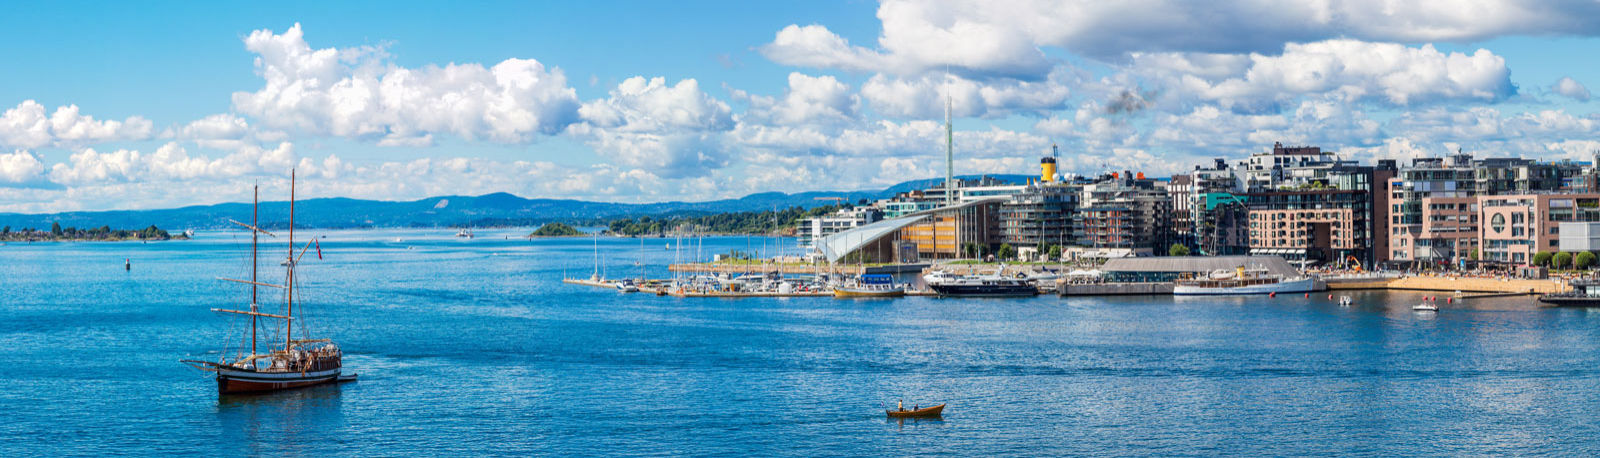 Skyline und Hafen von Oslo © Sergii Figurnyi Fotolia